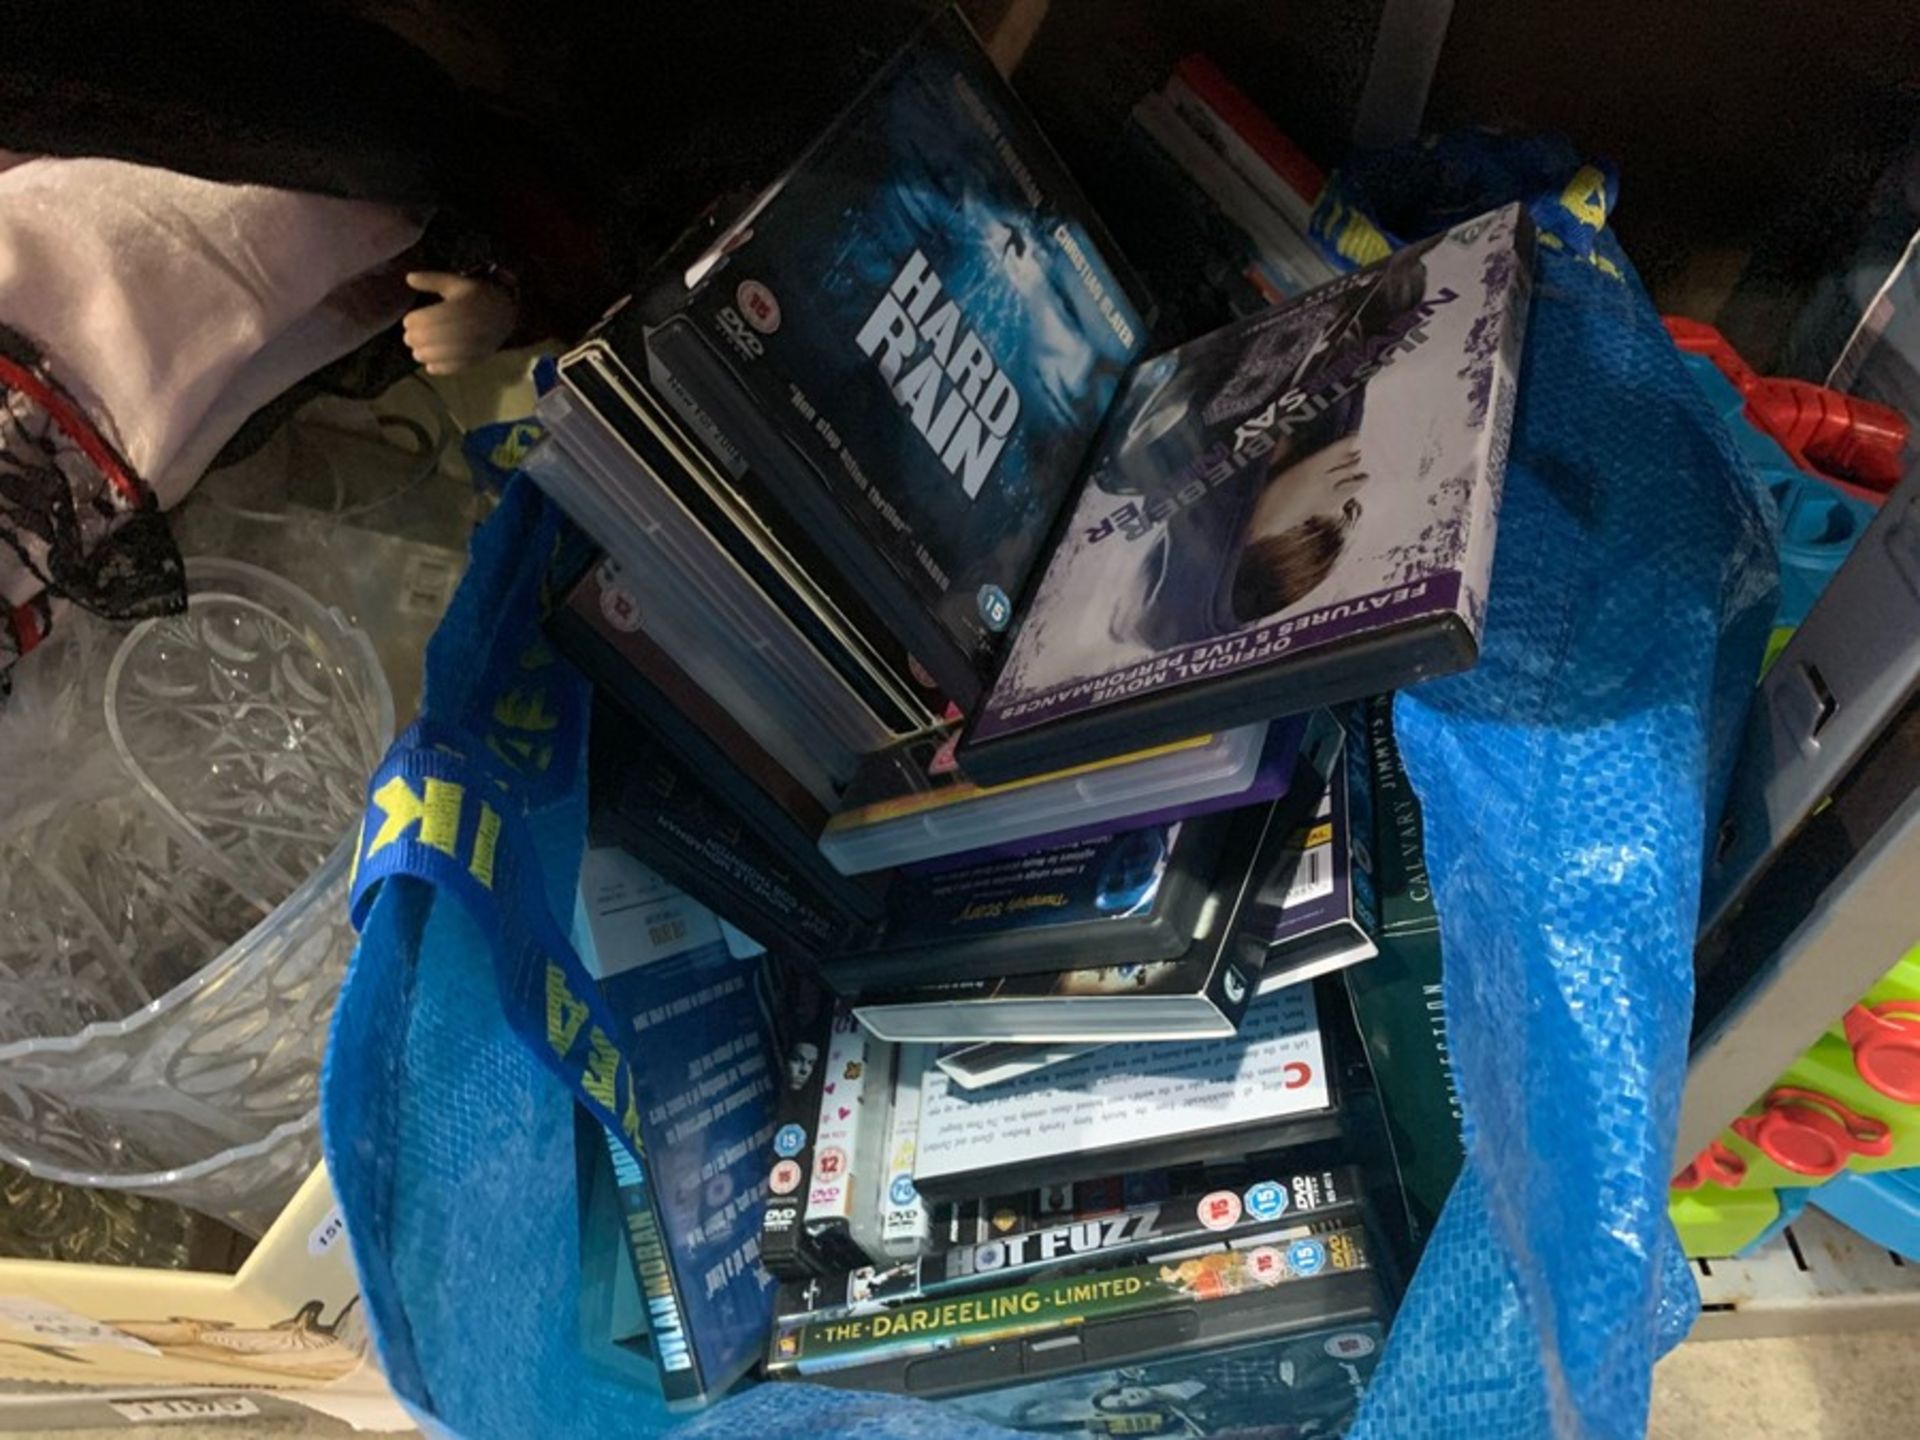 BAG OF DVDS